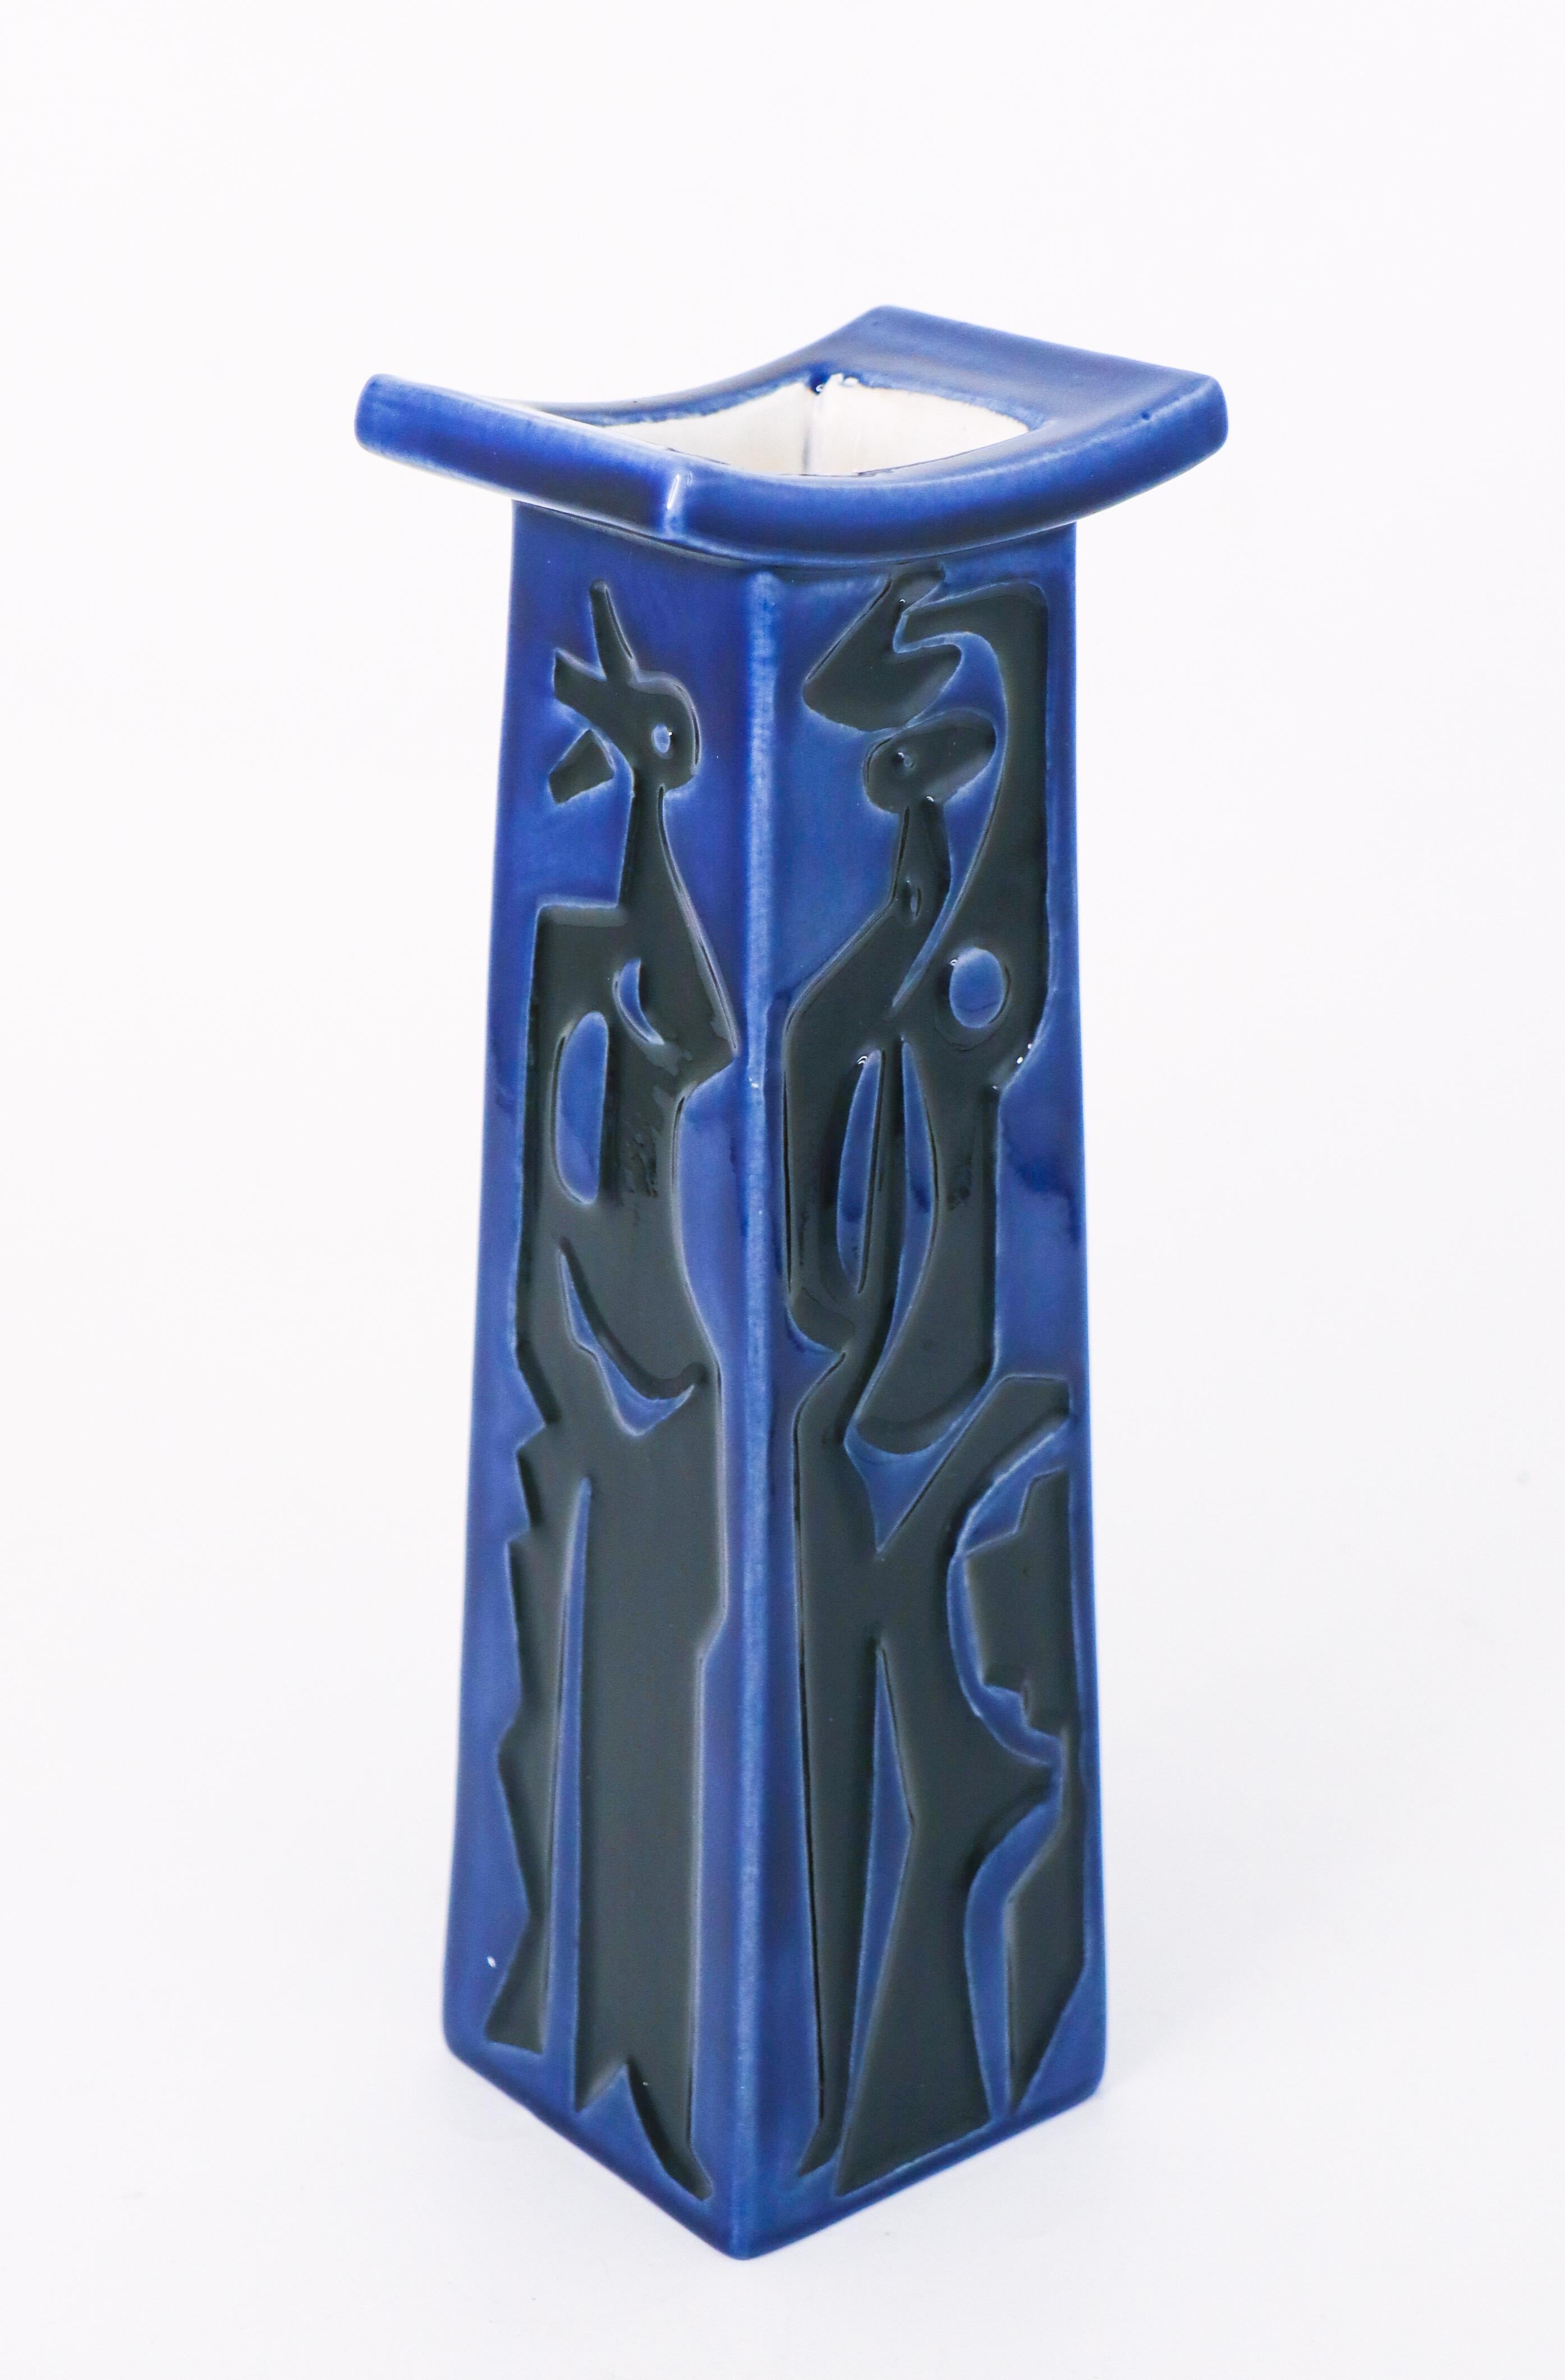 Vase en porcelaine conçu par Carl-Harry Stålhane à Rörstrand au milieu du XXe siècle, le vase est du modèle 